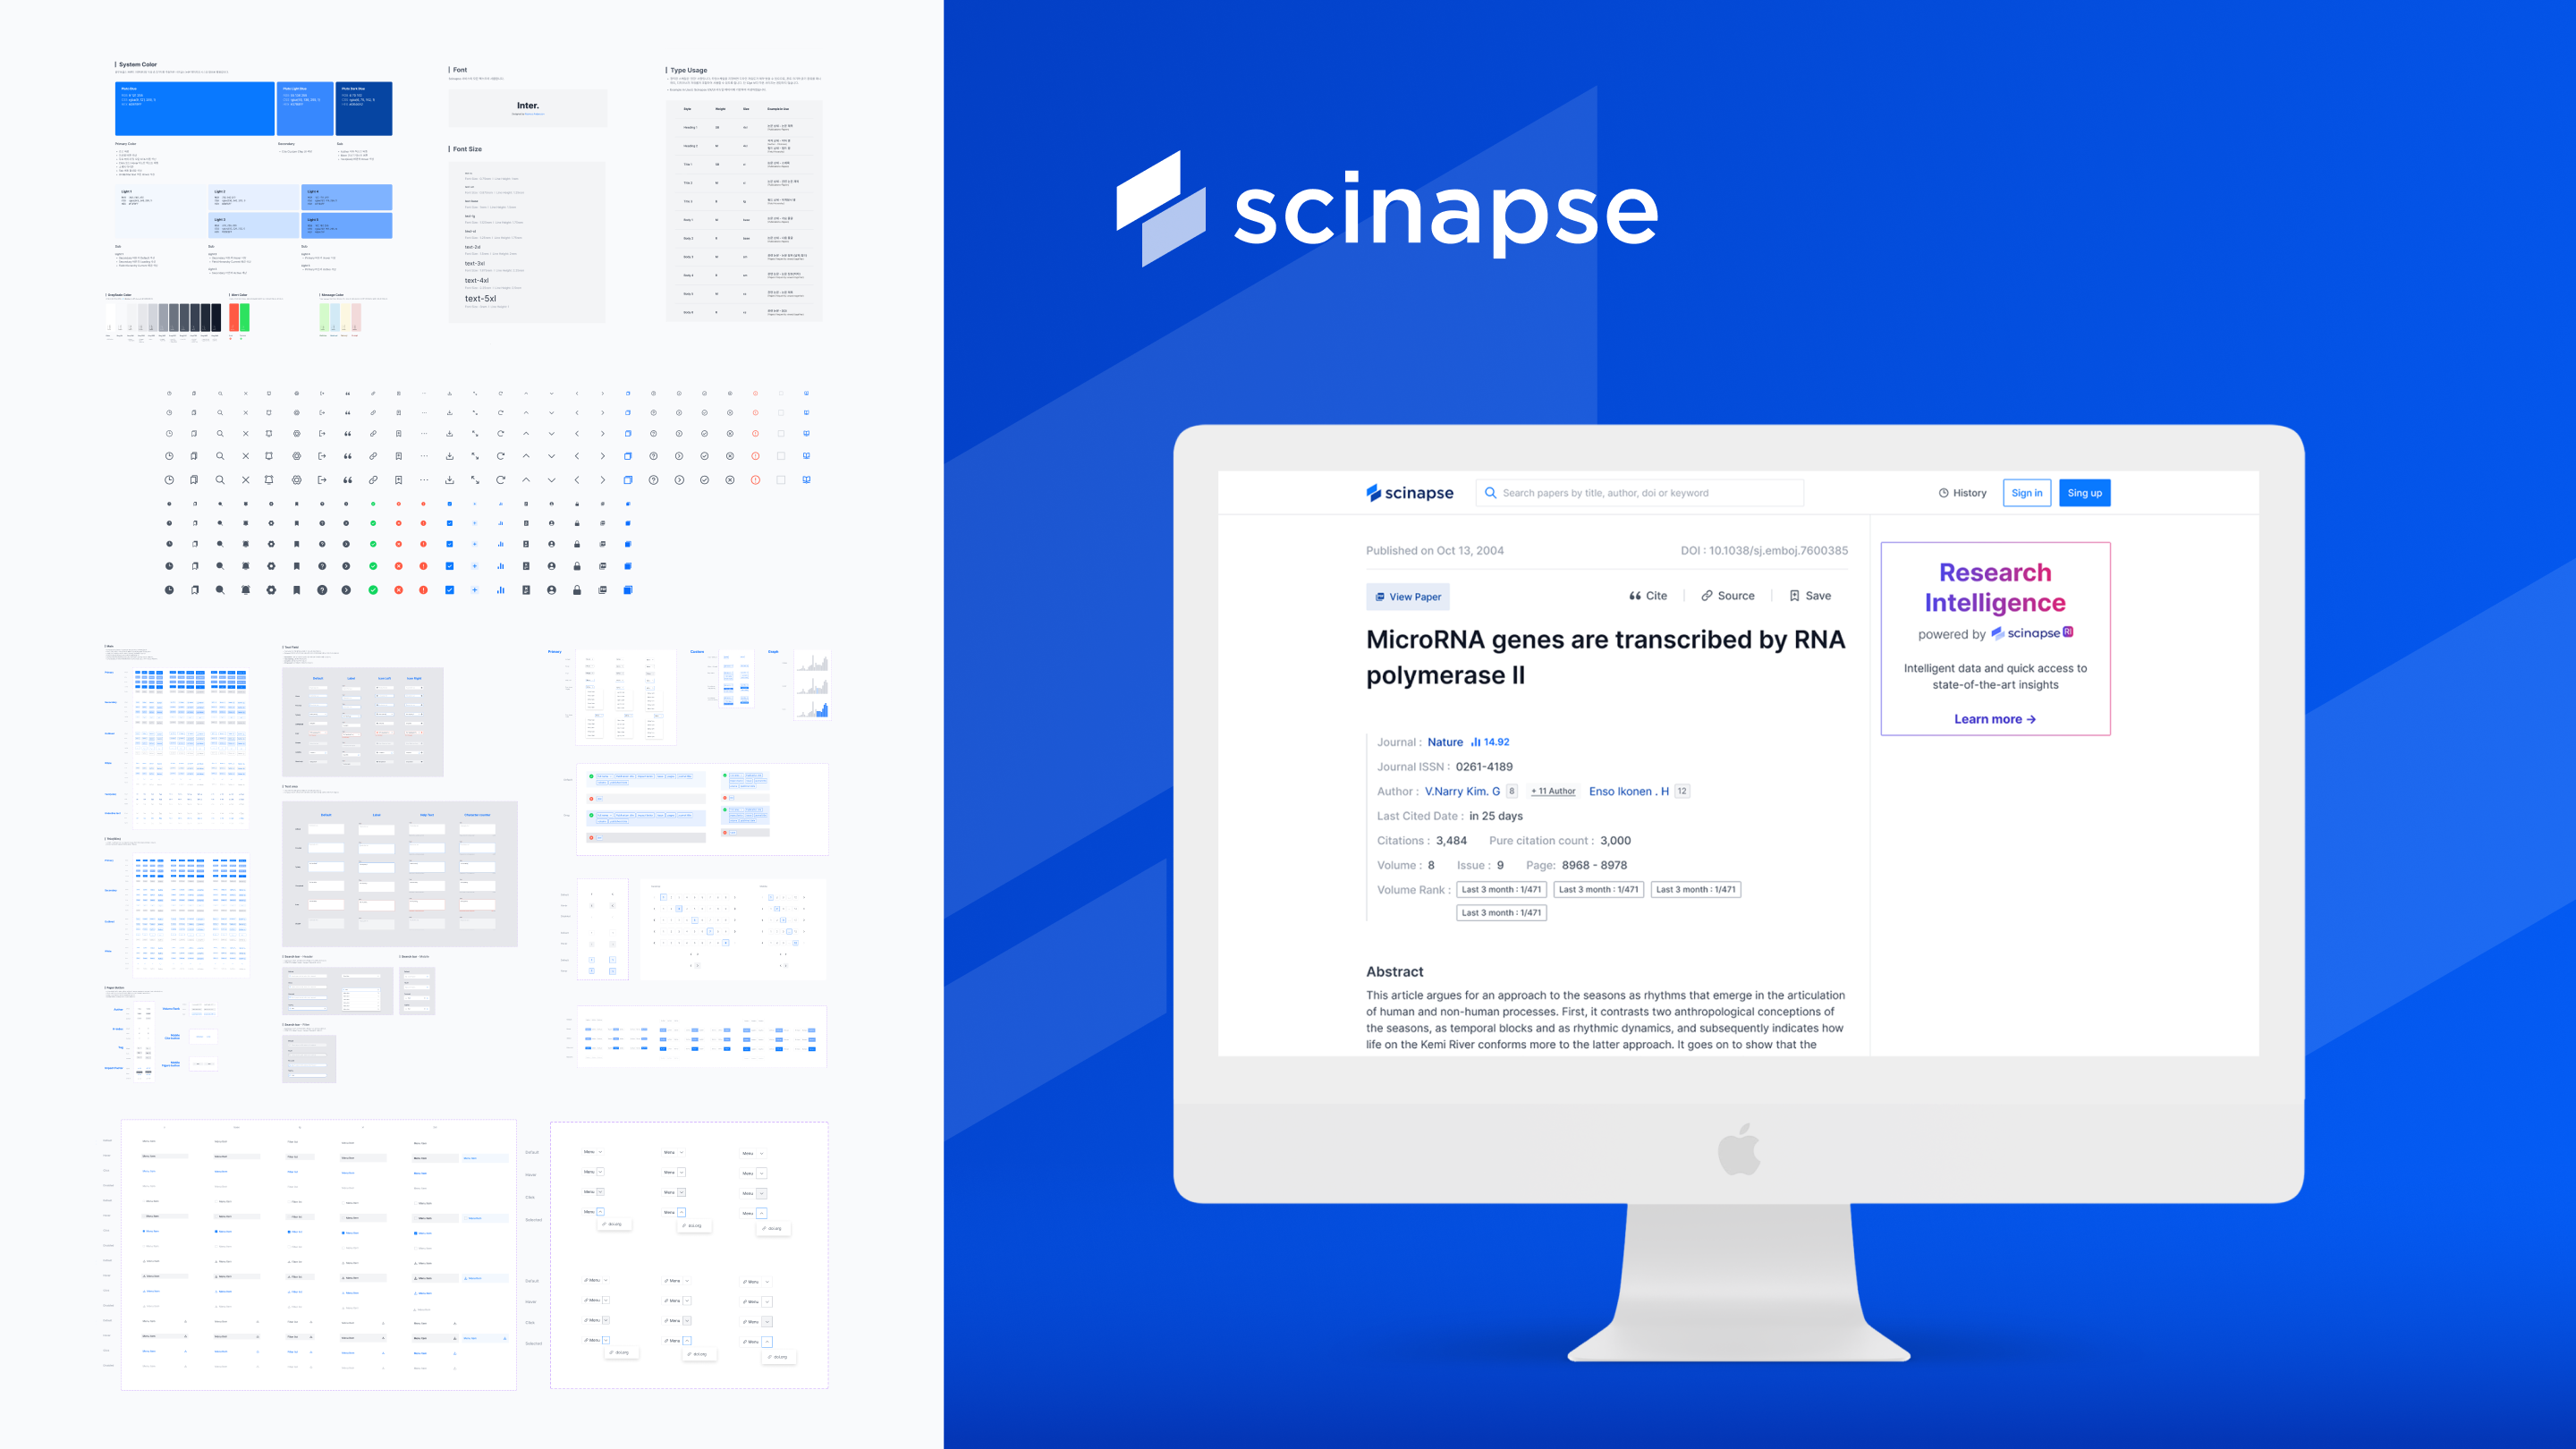 Scinapse : Academic Paper Search Service